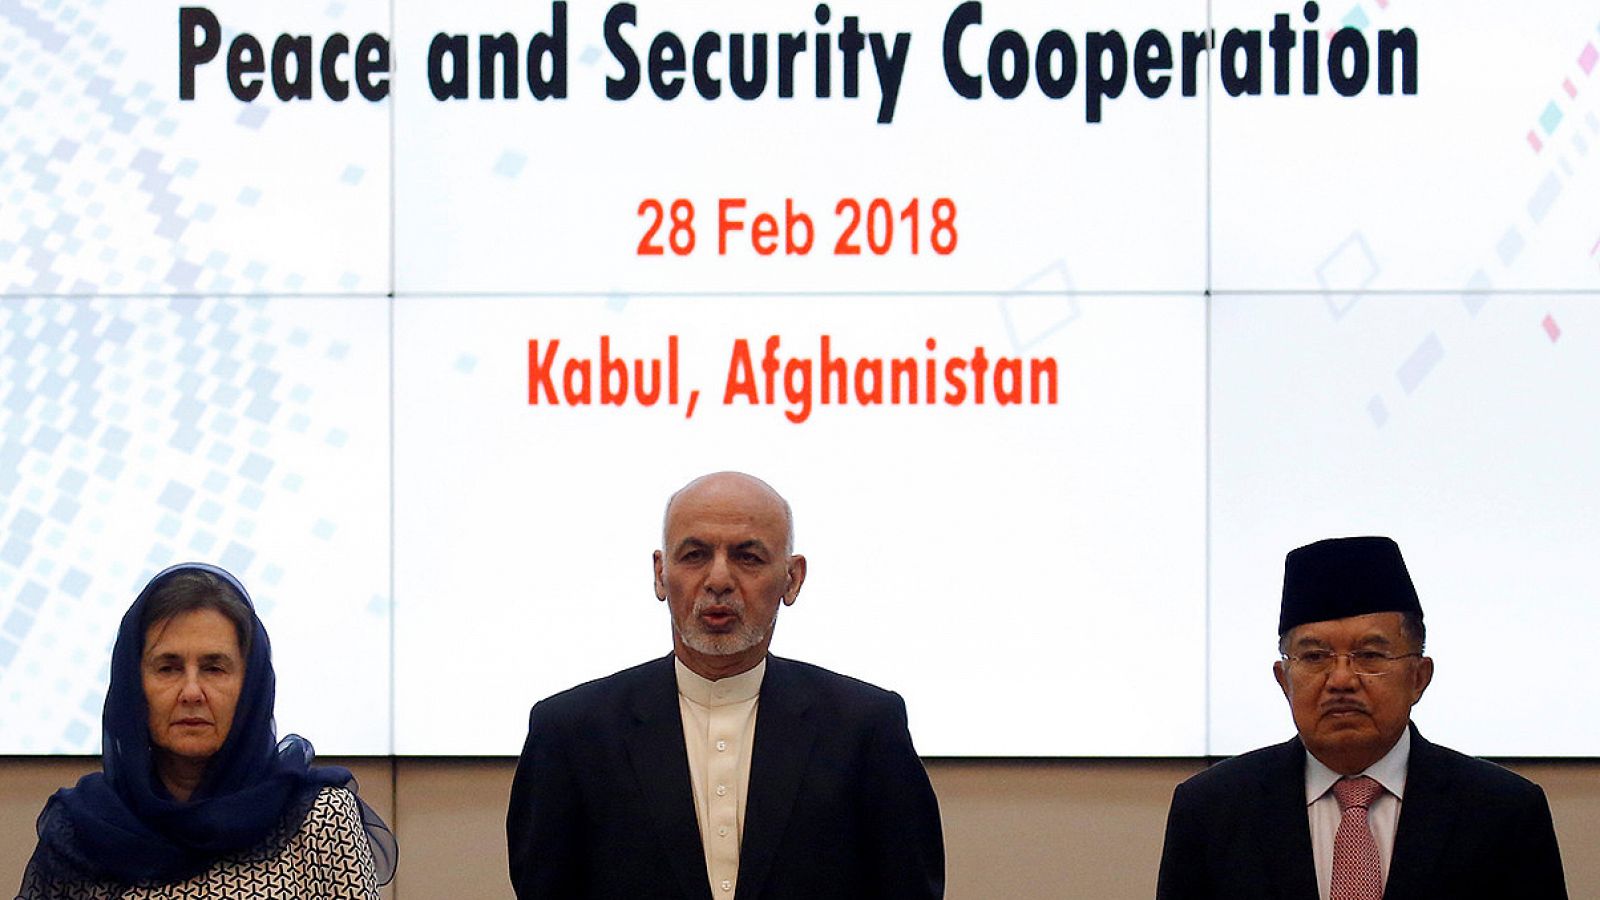 De izquierda a derecha, la primera dama de Afganistán, Rula Gani, junto a su marido, el presidente afgano Ashraf Gani, y el vicepresidente de Indonesia, Muhammad Yusuf Kalla, durante la conferencia de paz y seguridad celebrada en Kabul